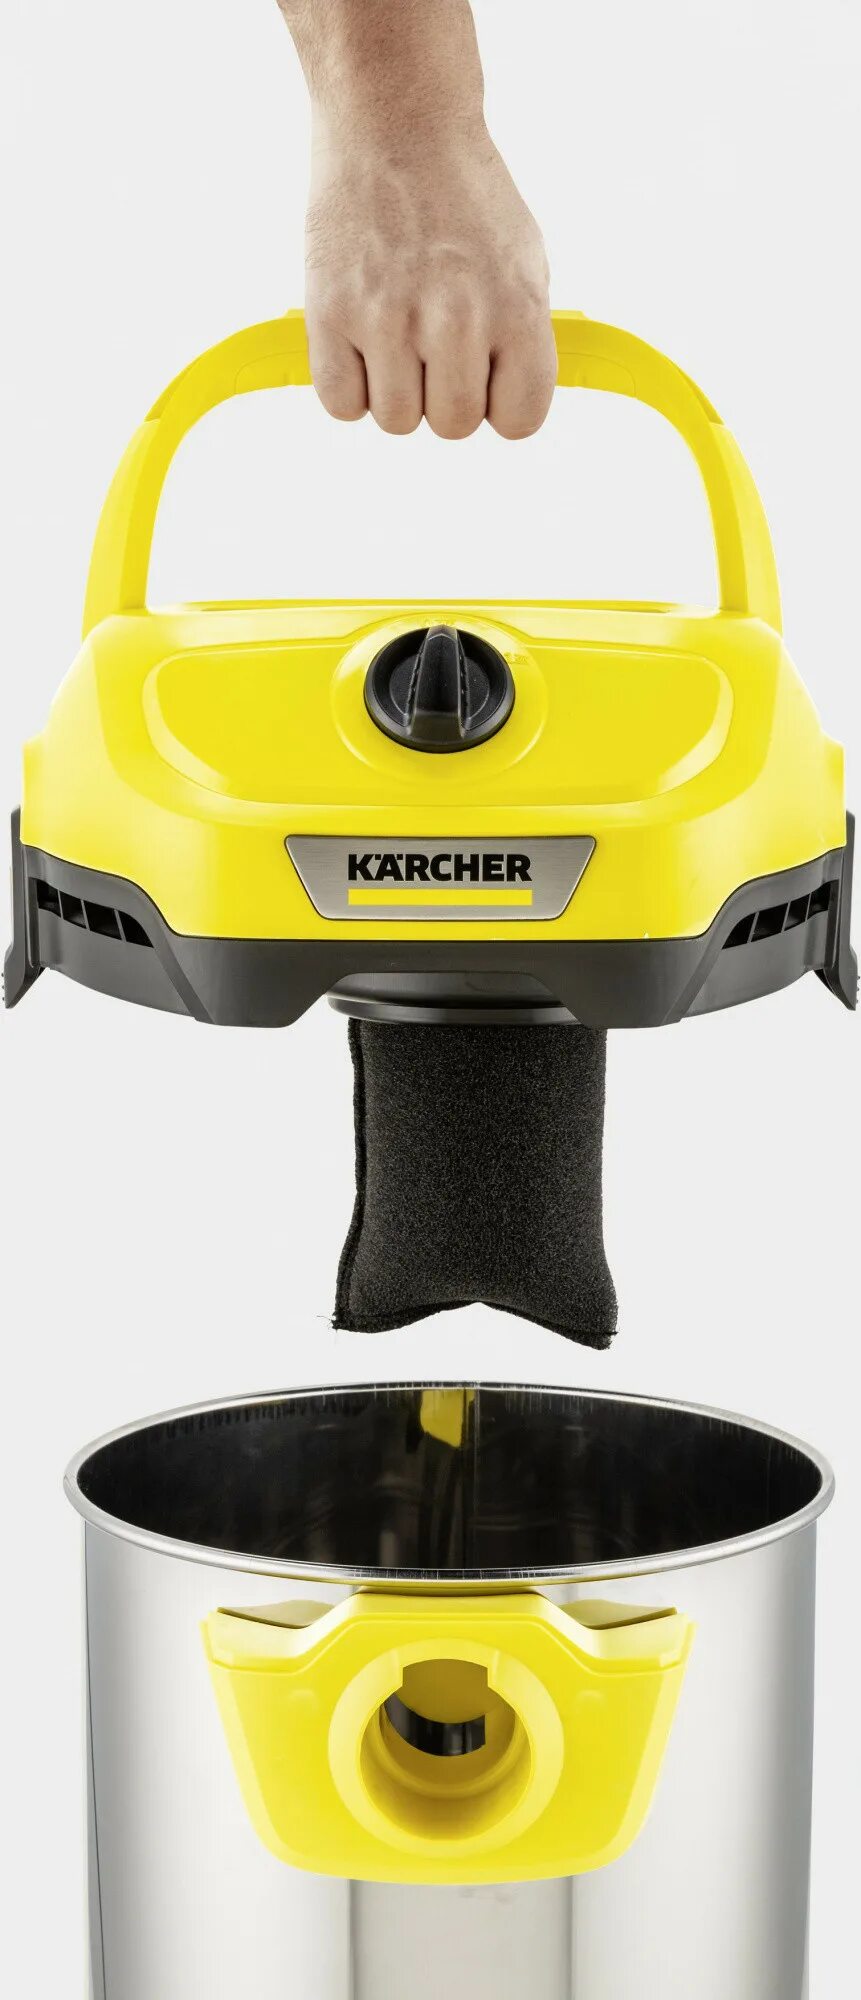 Karcher WD 2 Plus v-15. Karcher wd2 Plus циклон. Karcher WD 2 Plus s 1.628-050.0, 1000 Вт. Karcher WD 2 Plus v-15/4/18.